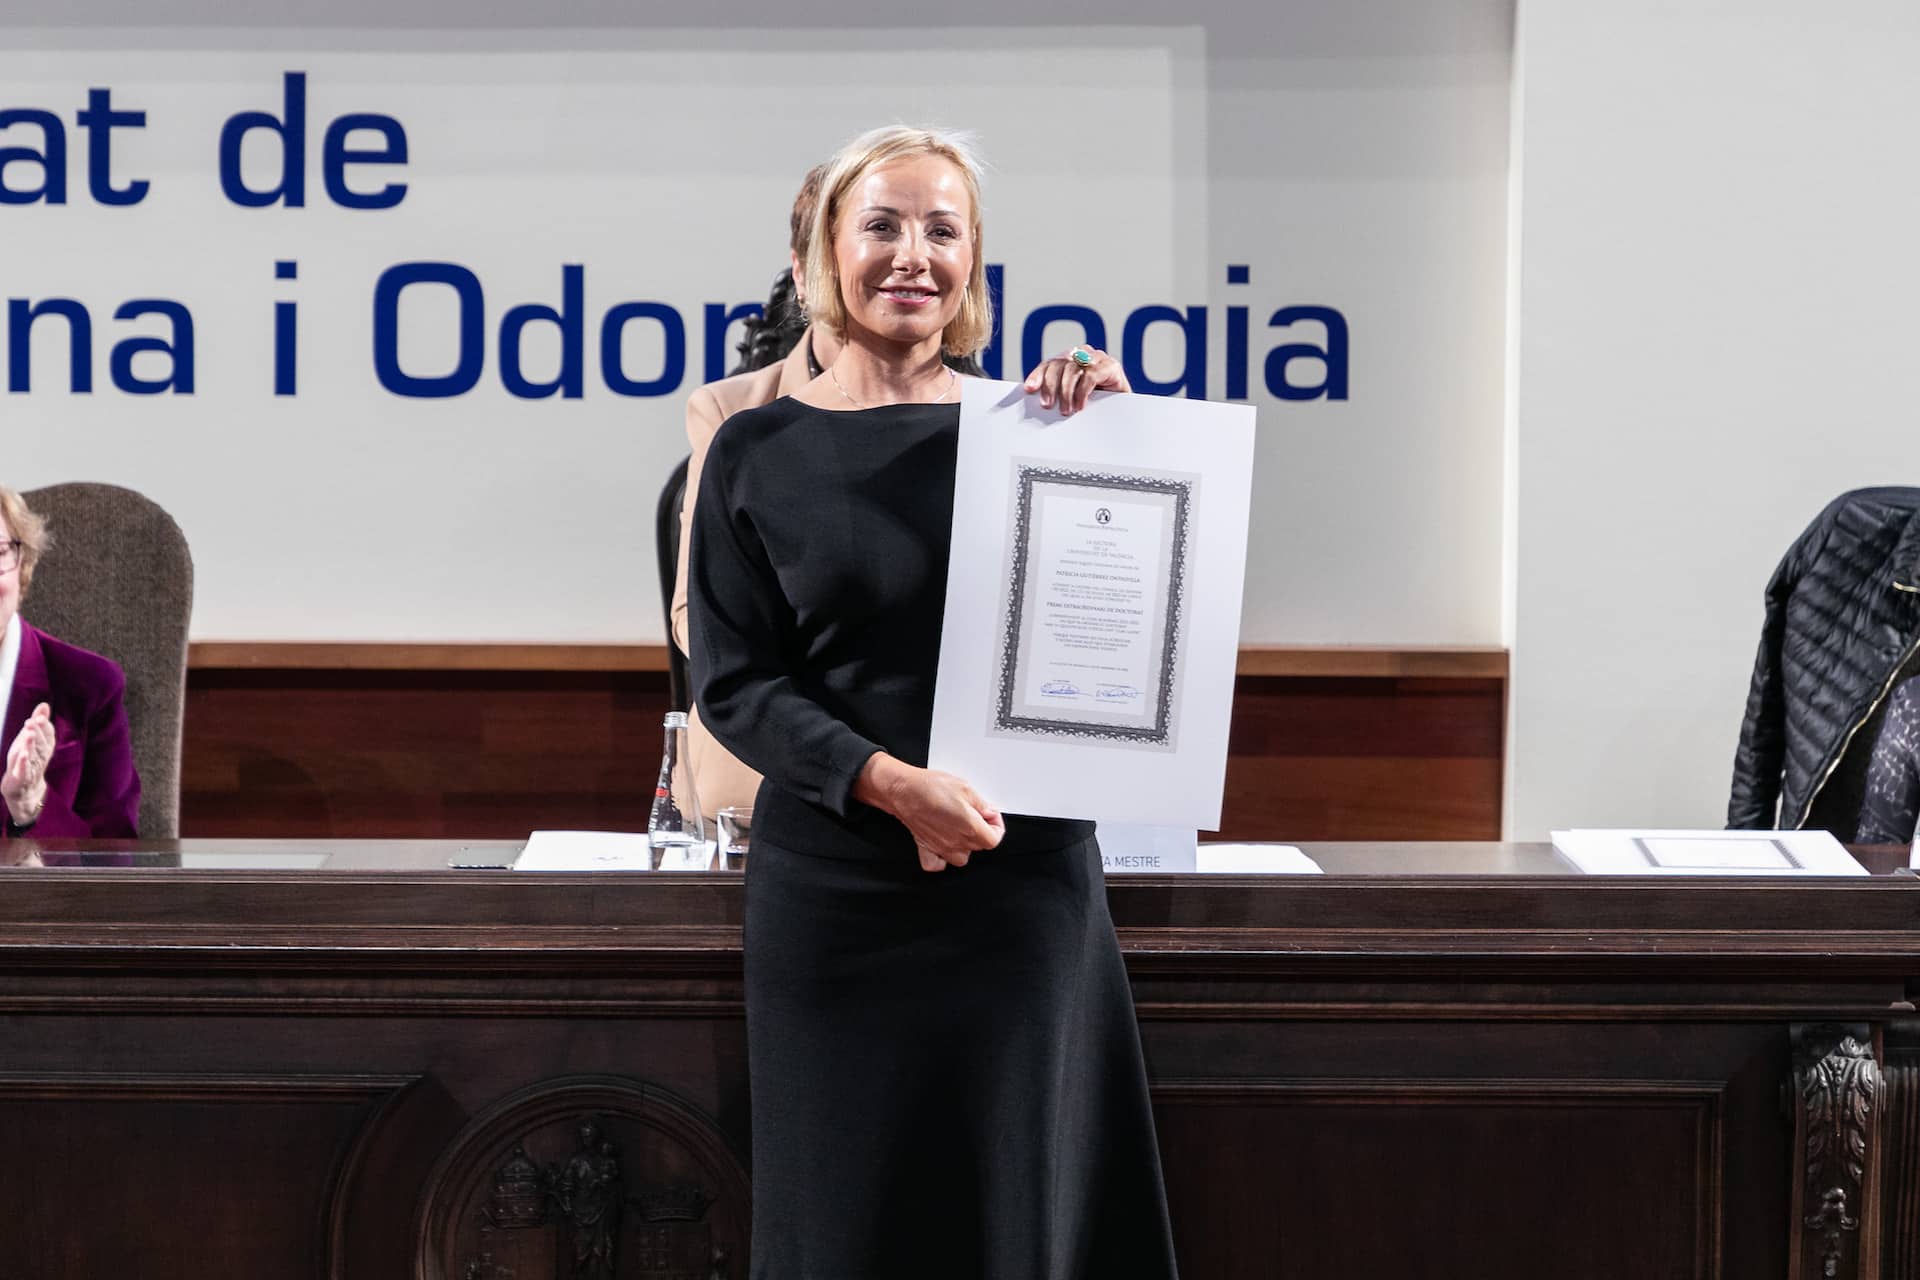 La Dra. Patricia Gutiérrez Ontalvilla (cirujana plástica) recibiendo el Premio Extraordinario de Tesis Doctoral 2020